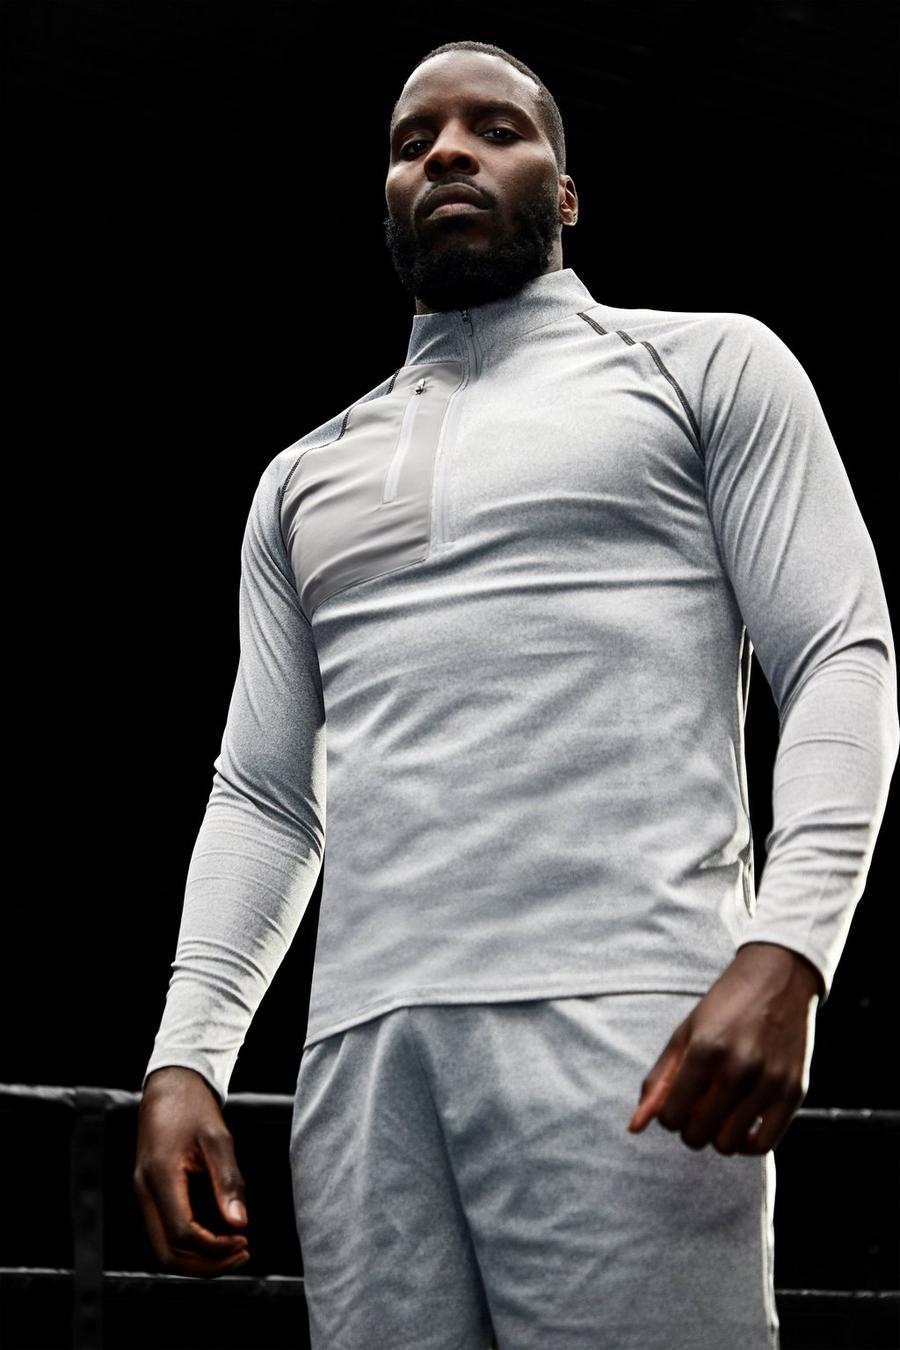 אפור grigio טופ ספורטיבי בגזרה צמודה עם רוכסן ותפרים בצבעים מנוגדים עם כיתוב Man